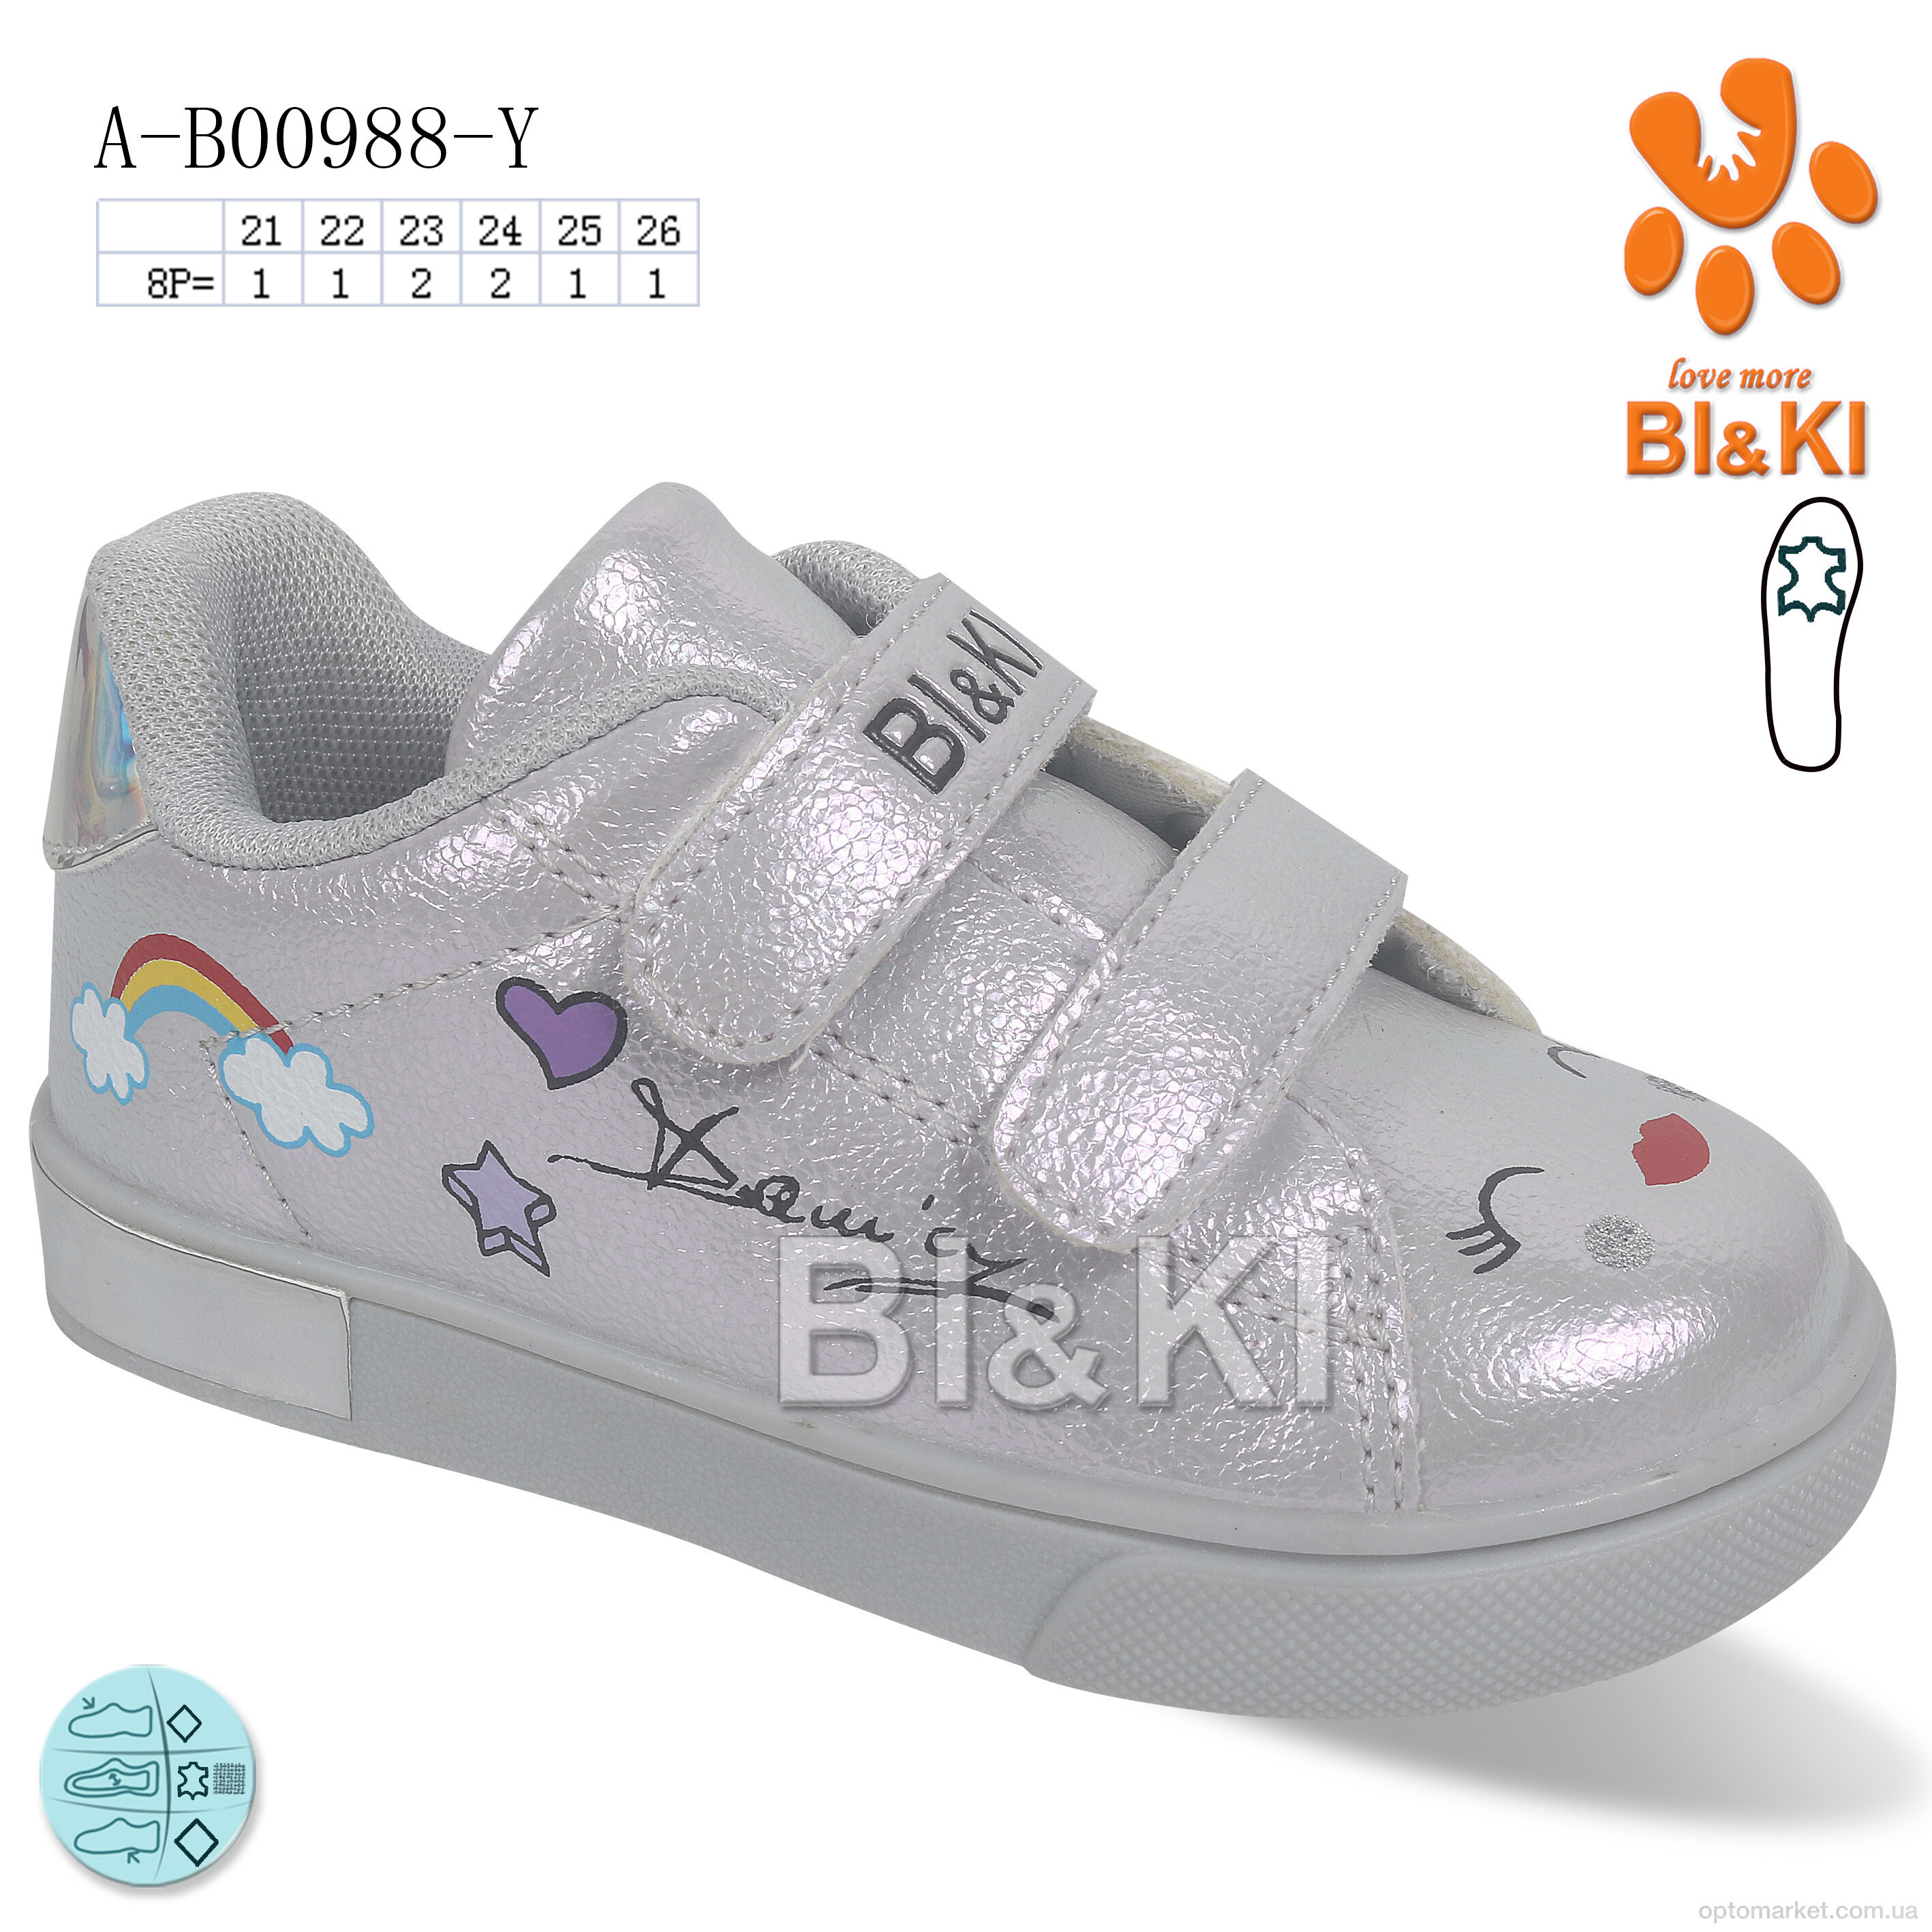 Купить Кросівки дитячі A-B00988-Y Bi&Ki срібний, фото 1